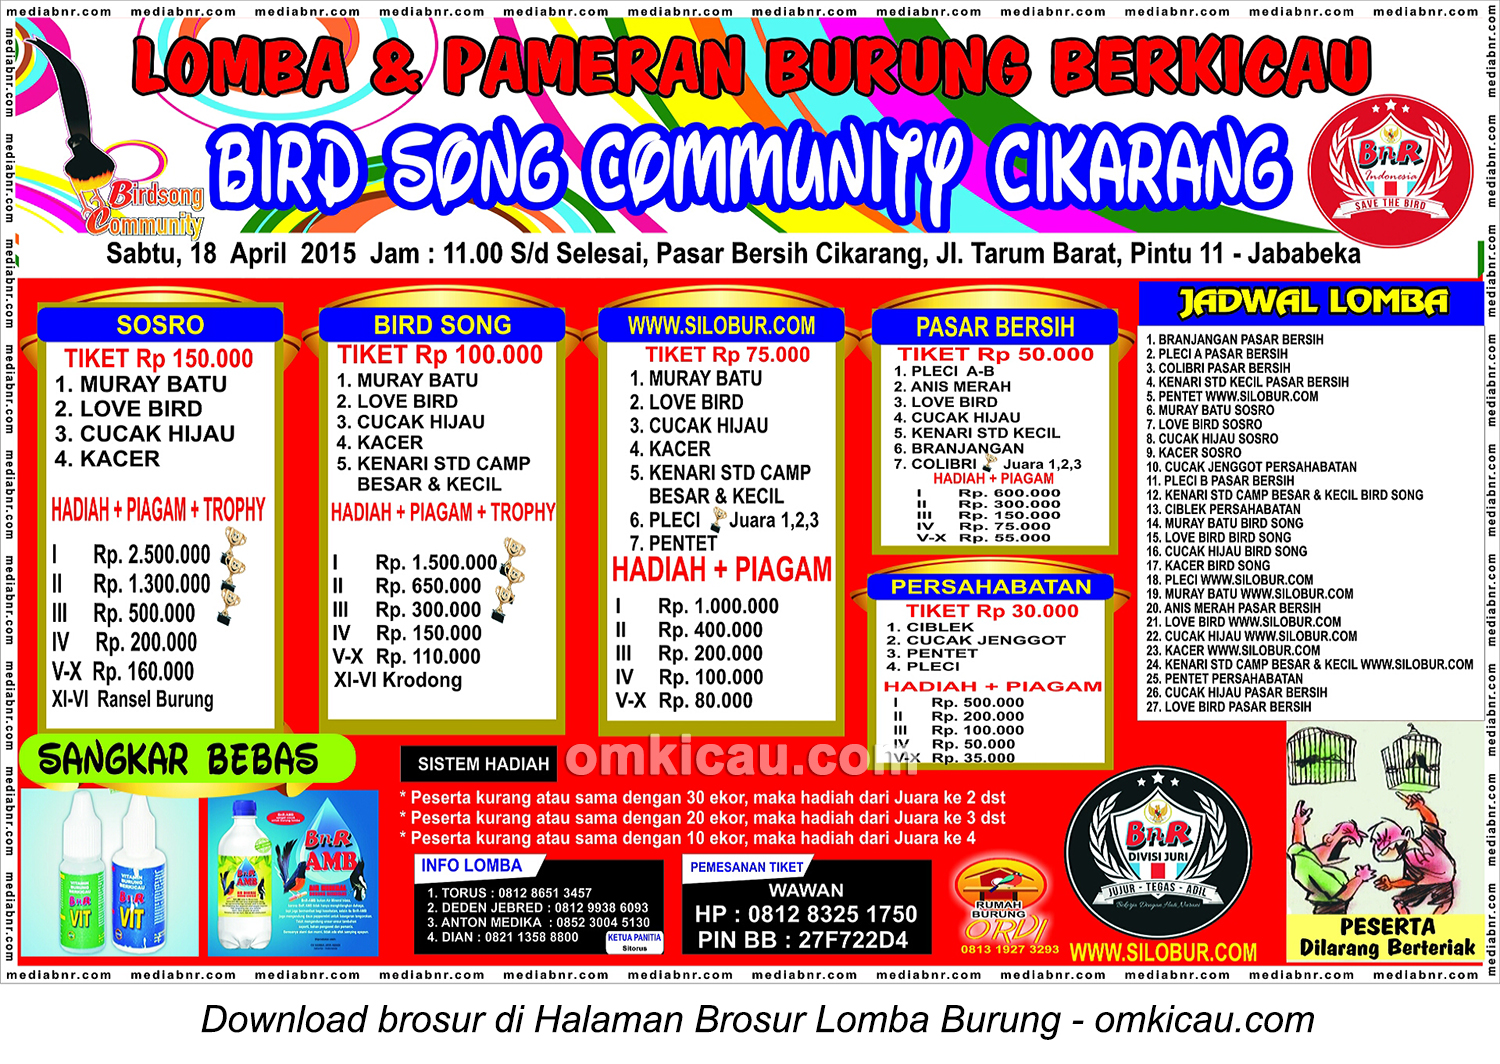 Brosur Lomba Burung Bird Song Community Cikarang, 18 April 2015